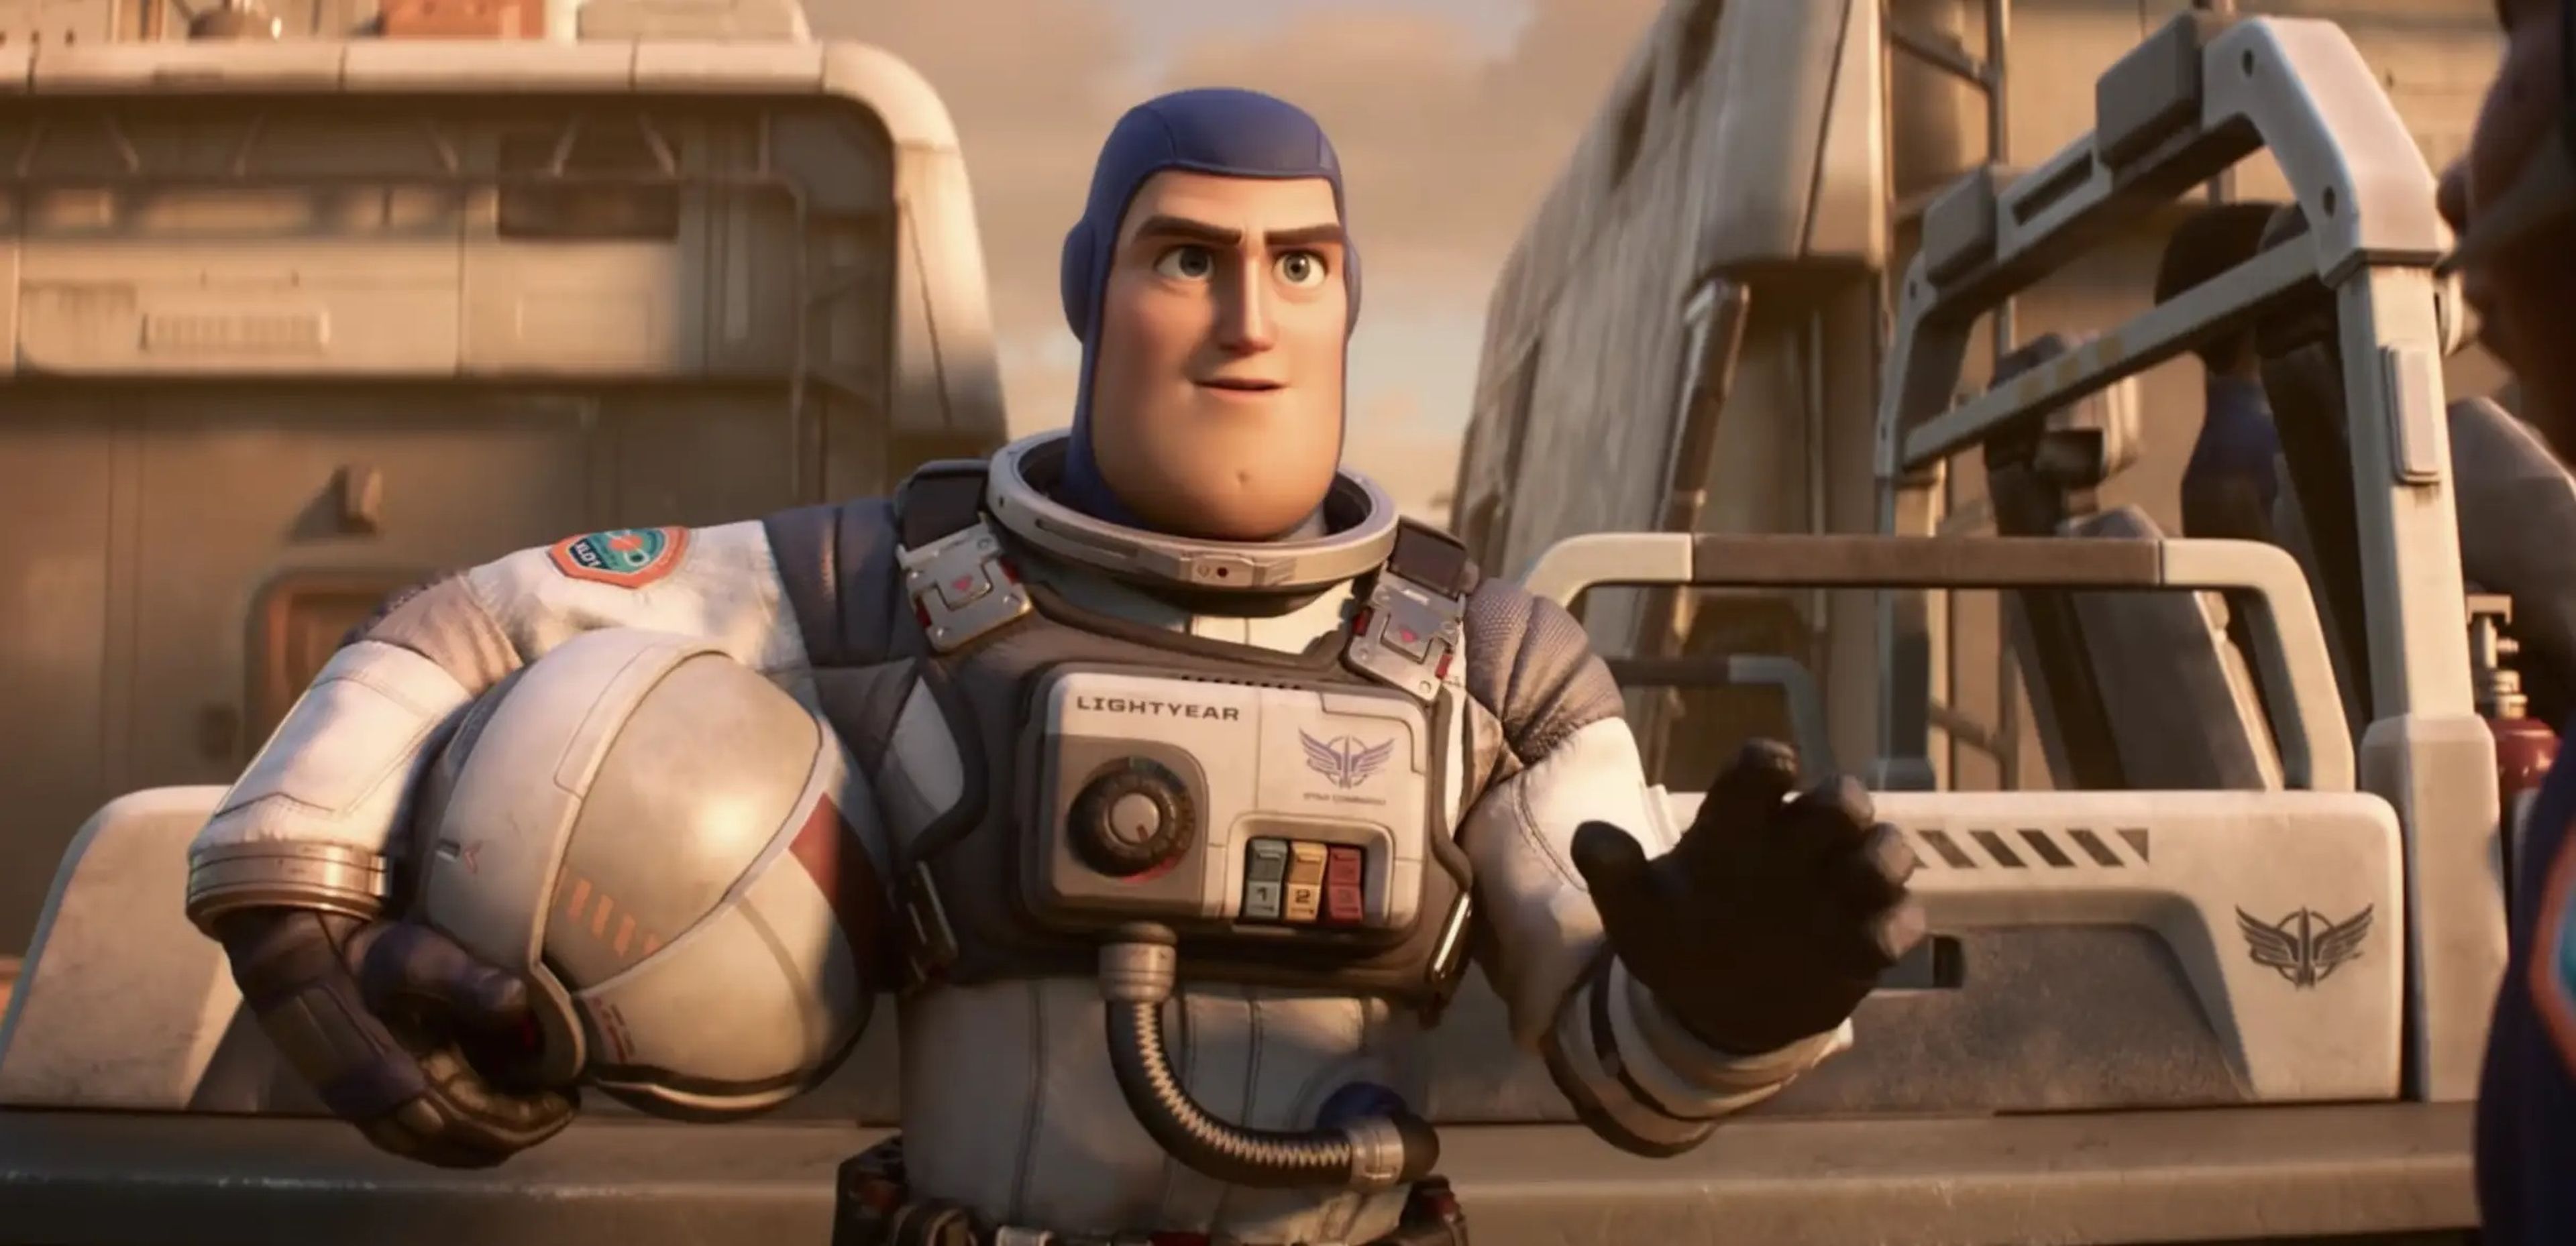 La película animada de ciencia ficción cuenta la historia del origen de Buzz Lightyear, el héroe que inspiró el juguete.